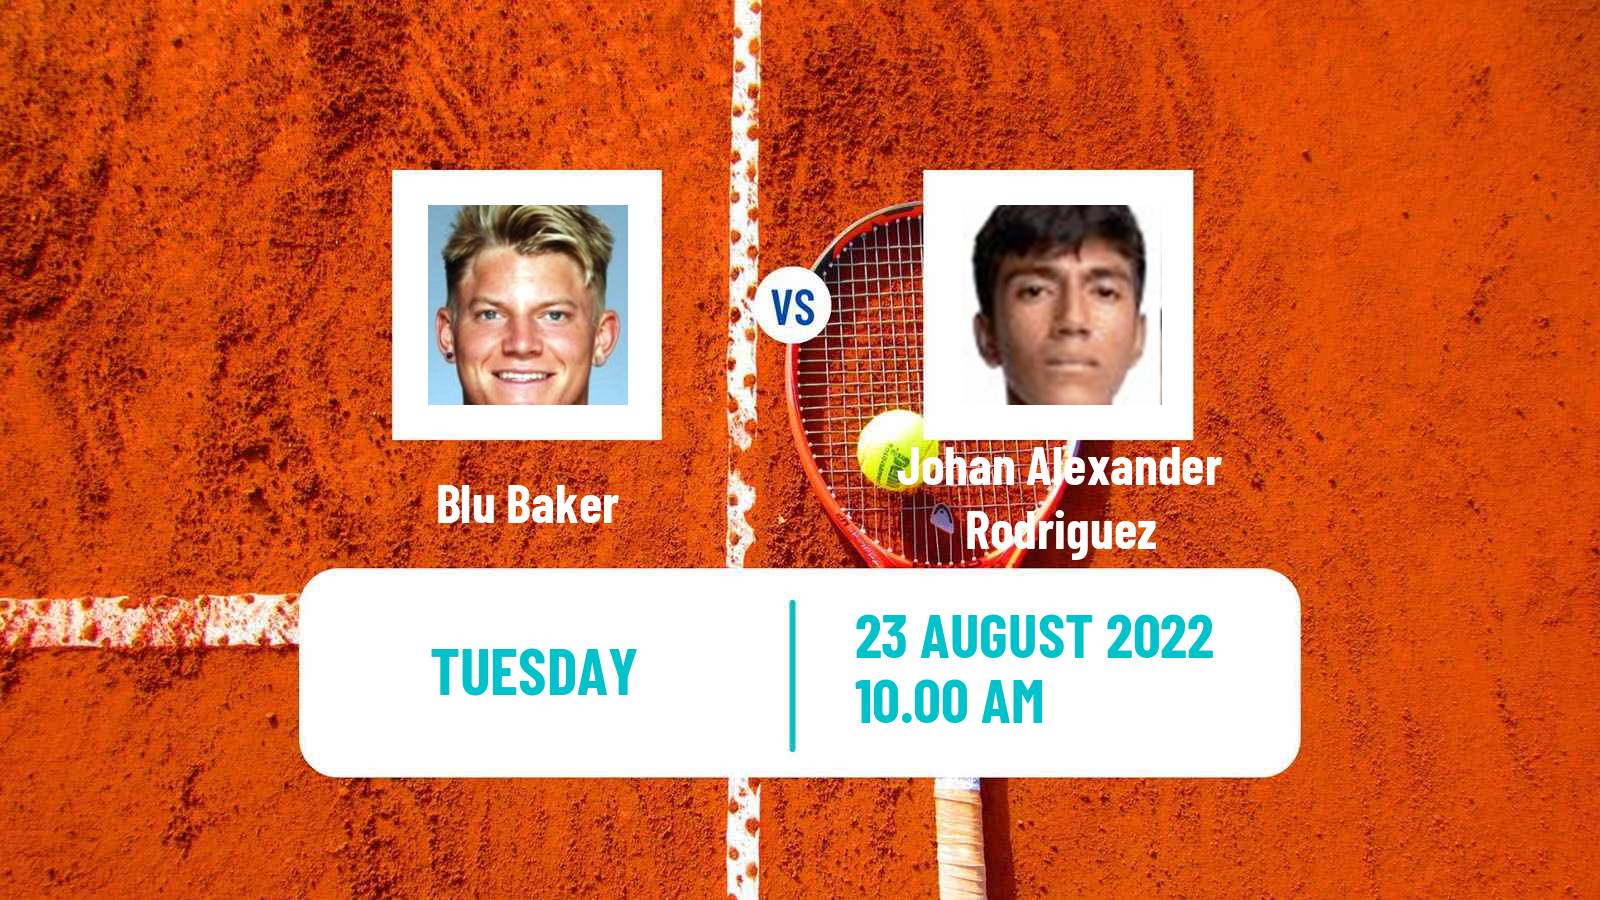 Tennis ITF Tournaments Blu Baker - Johan Alexander Rodriguez